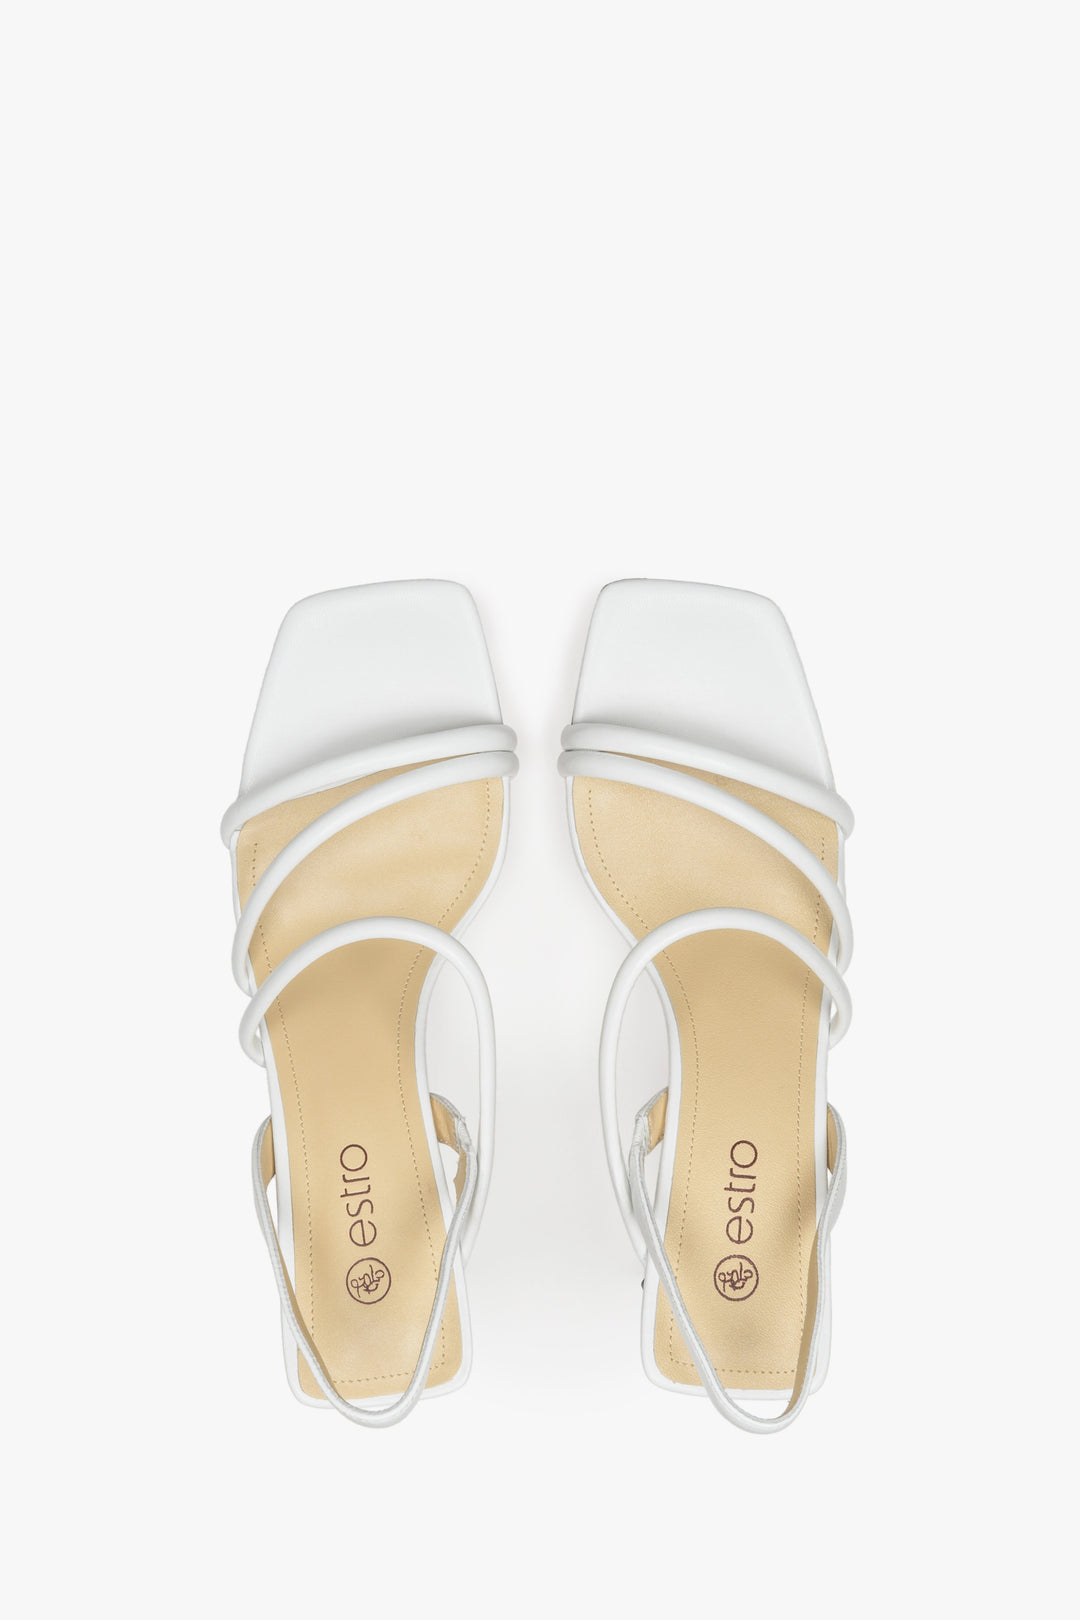 Stylowe, białe buty damskie z cienkich pasków na słupkowym obcasie - prezentacja modelu z góry.